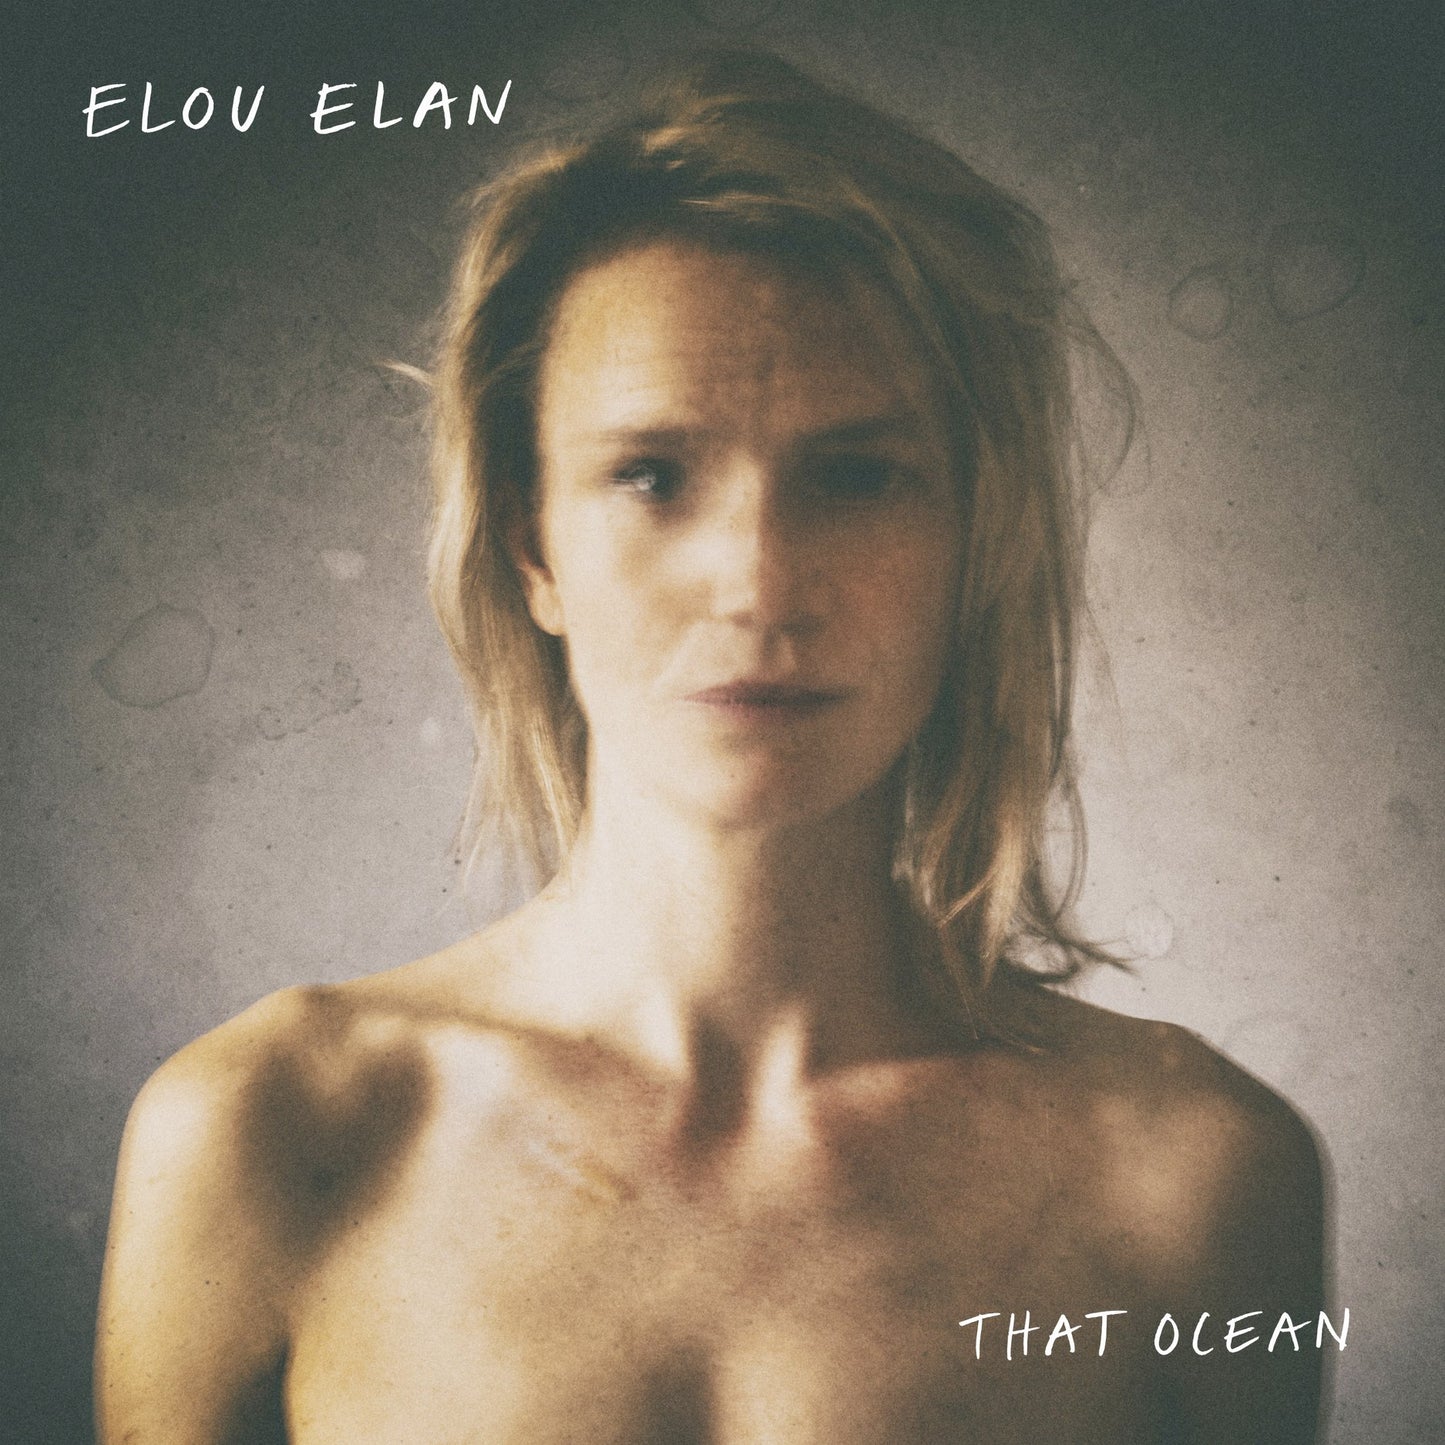 Elan, Elou - That Ocean